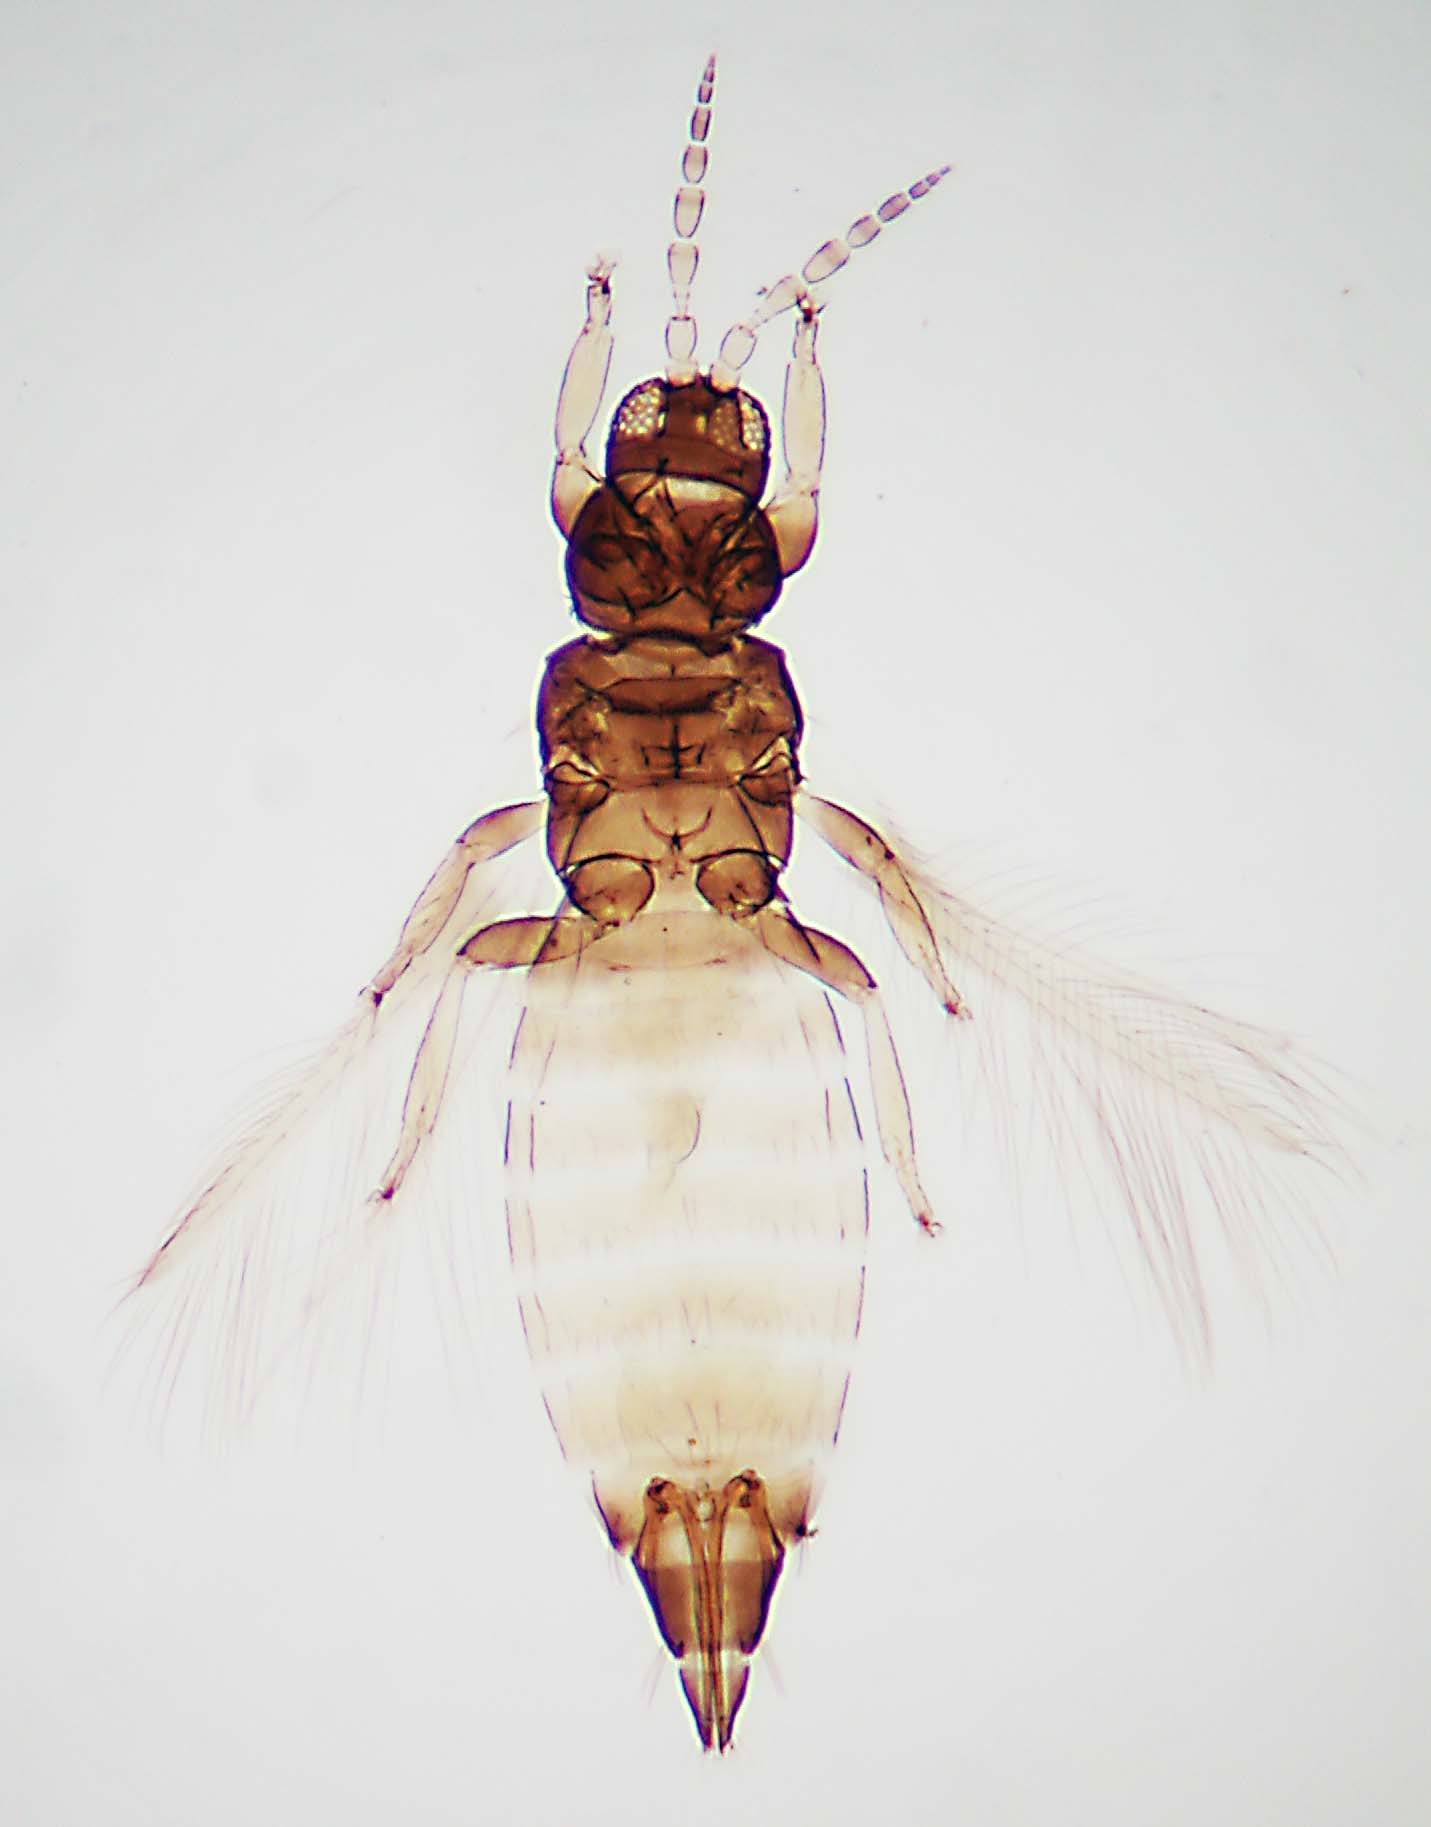 Heterothrips bicolor